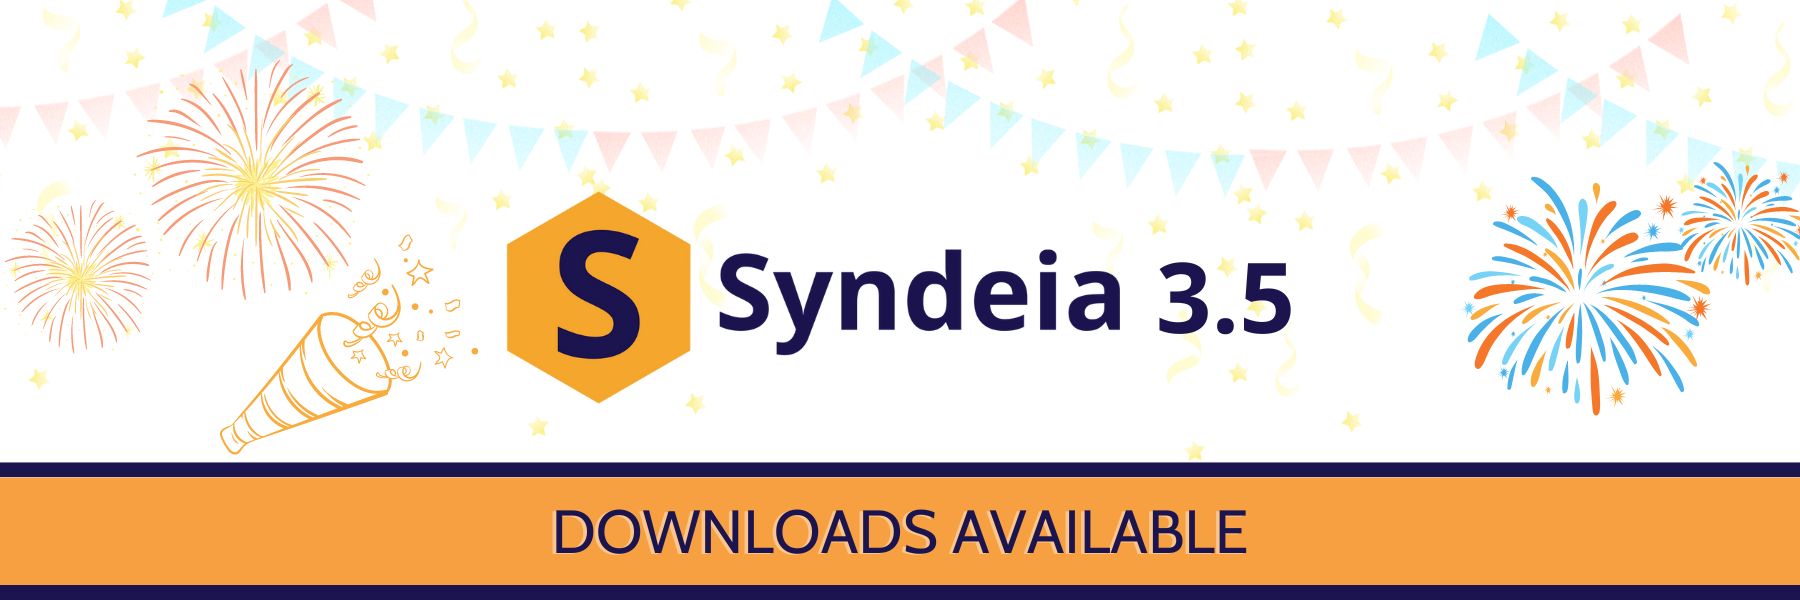 Digital Thread - Syndeia 3.5